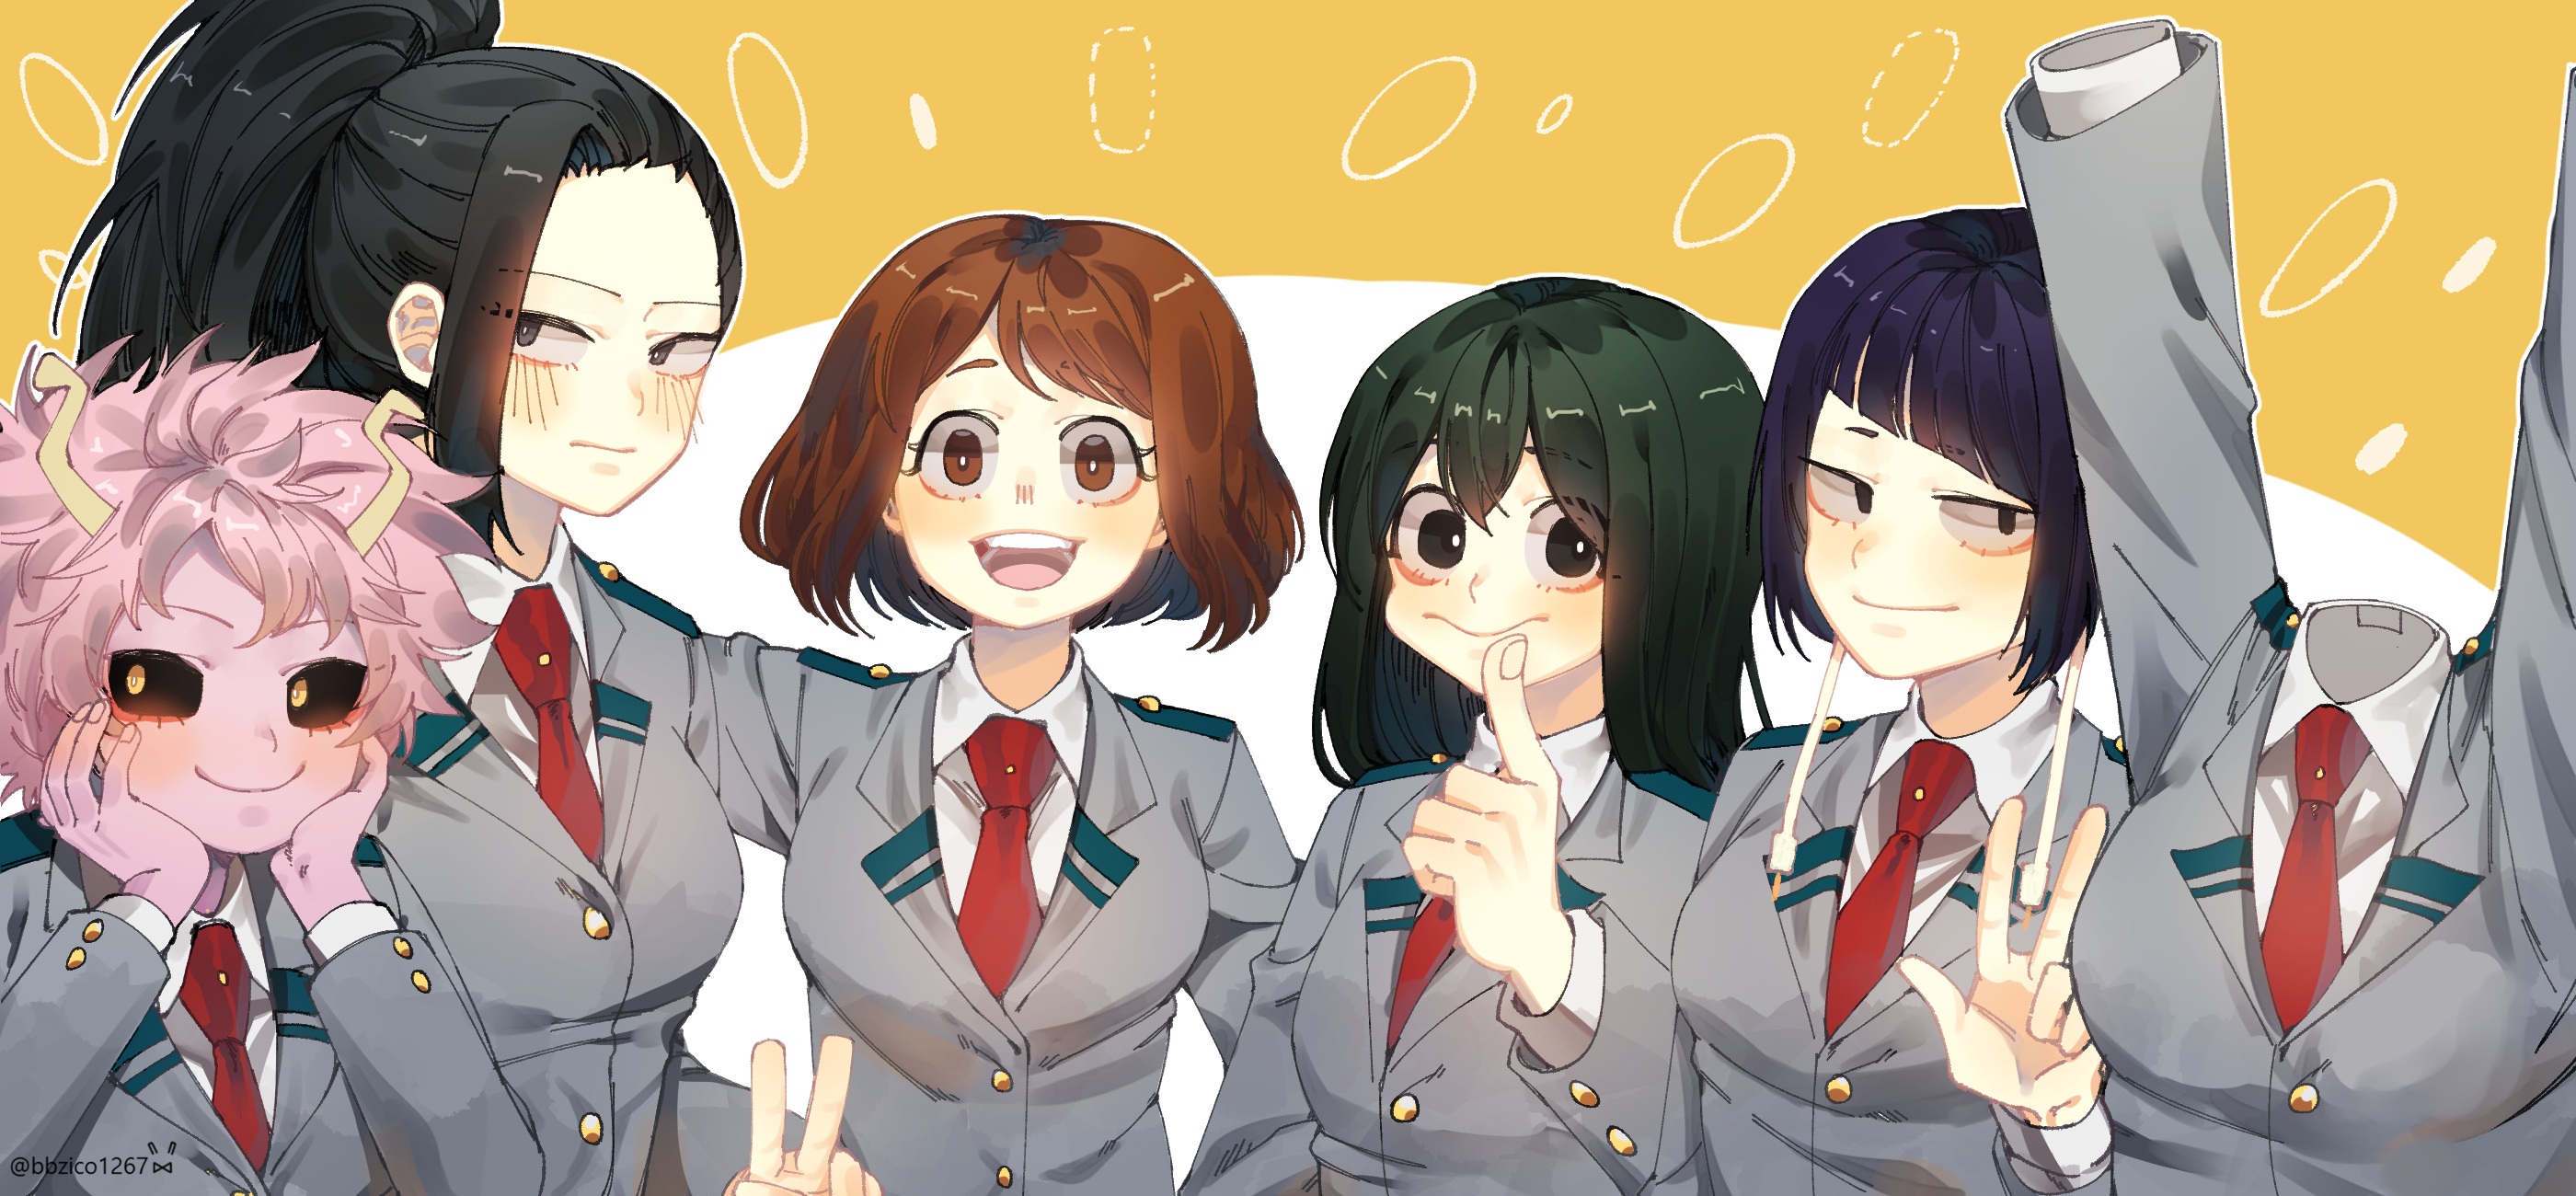 Free download wallpaper Anime, My Hero Academia, Ochaco Uraraka, Mina Ashido, Momo Yaoyorozu, Kyōka Jirō, Tsuyu Asui, Toru Hagakure on your PC desktop